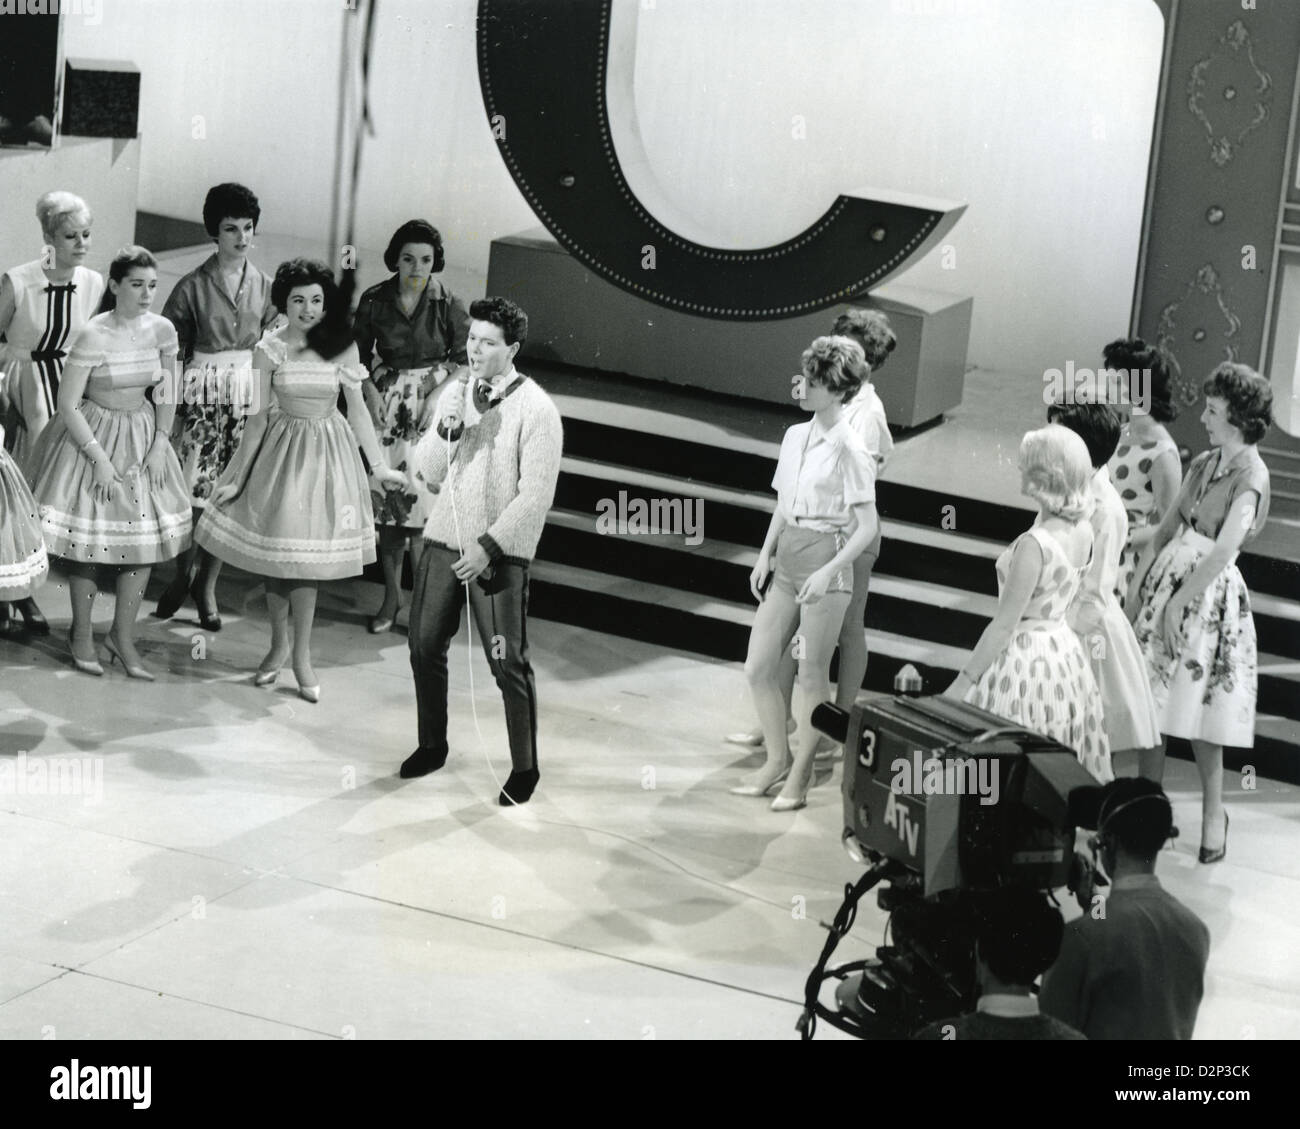 CLIFF RICHARD con el cantante pop británico Vernons Chicas en su ATV espectáculo titulado 'acantilado' en enero de 1961 Foto de stock